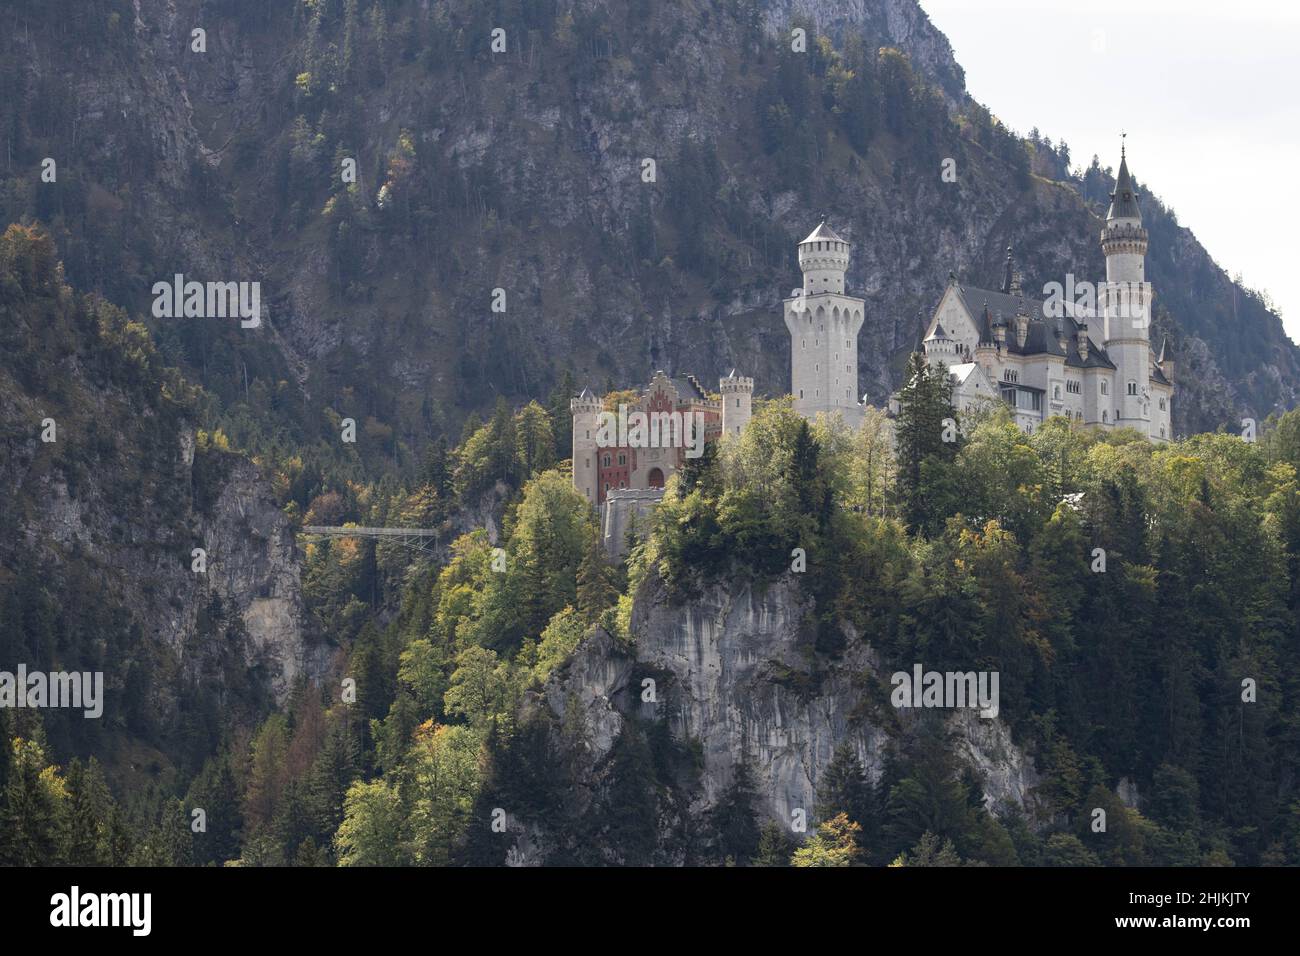 Das malerische Märchenschloß im Ost-Allgäu bei Füssen, eingebettet in eine traumhafte Landschaft. 1869 war der Baustart des Schlosses, welches von Kön Stock Photo